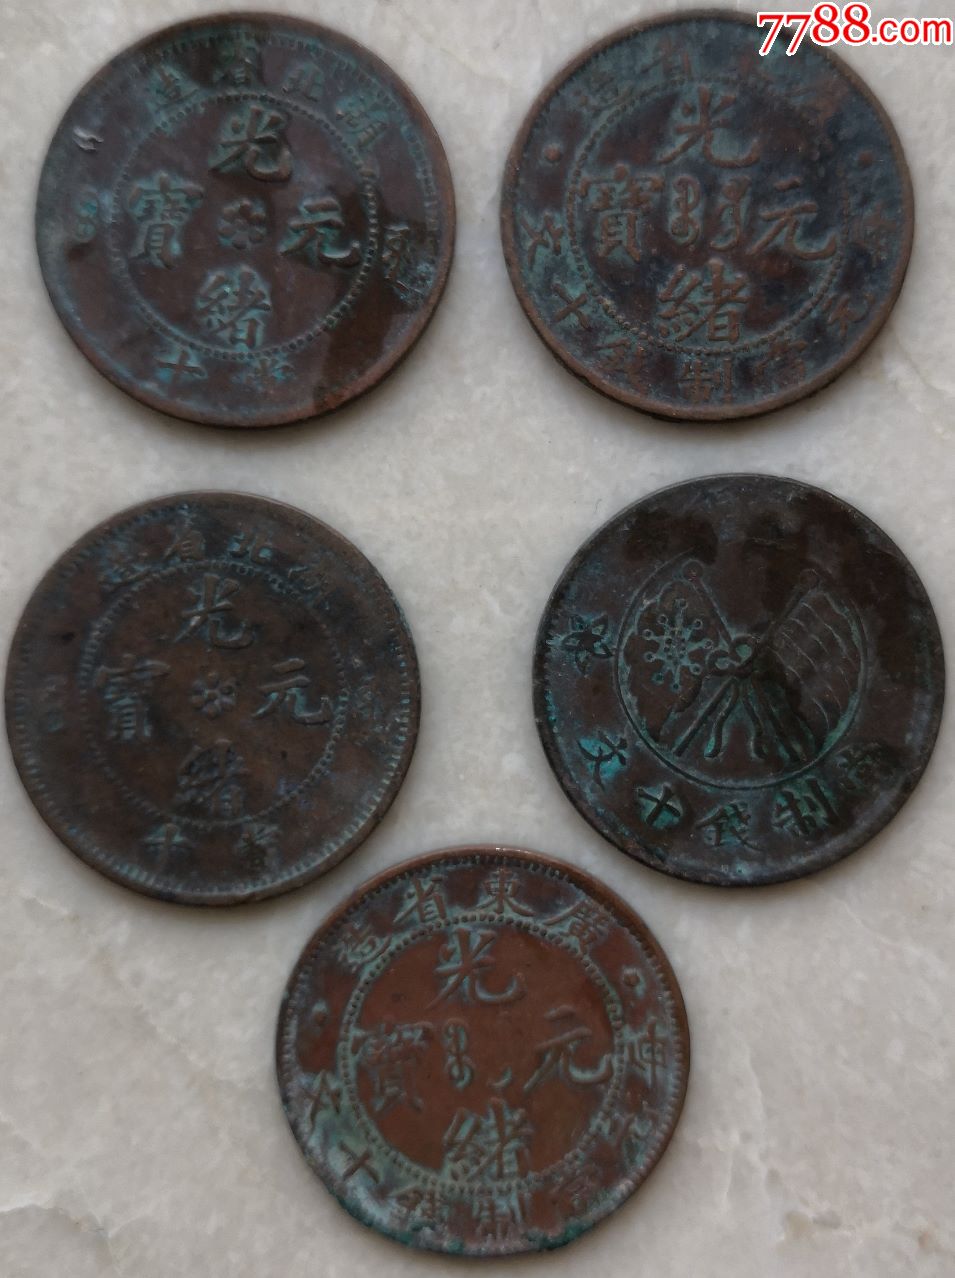 古铜币回收价格及图片图片